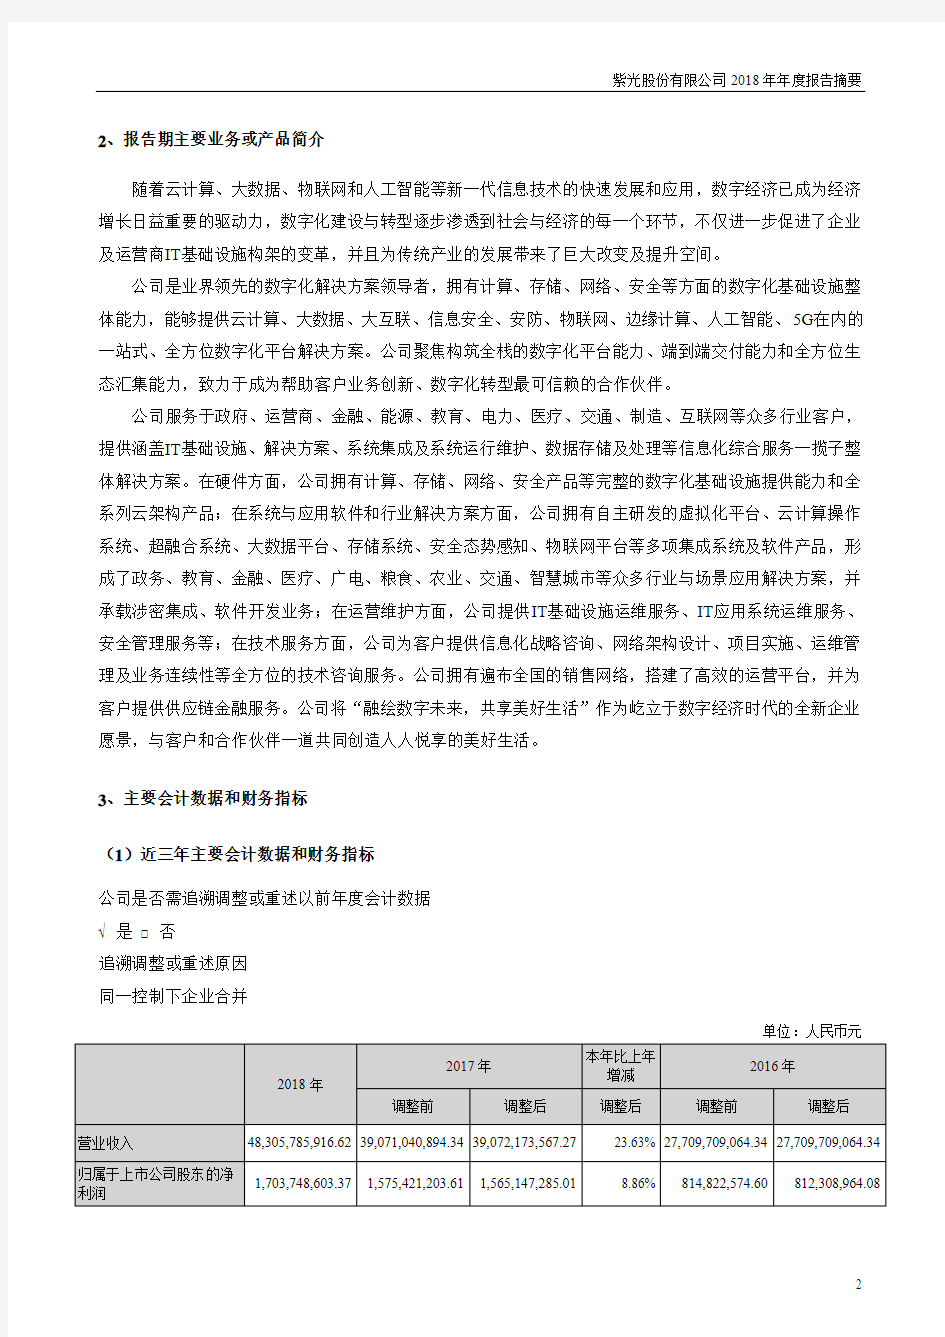 紫光股份有限公司2018年报告摘要.pdf